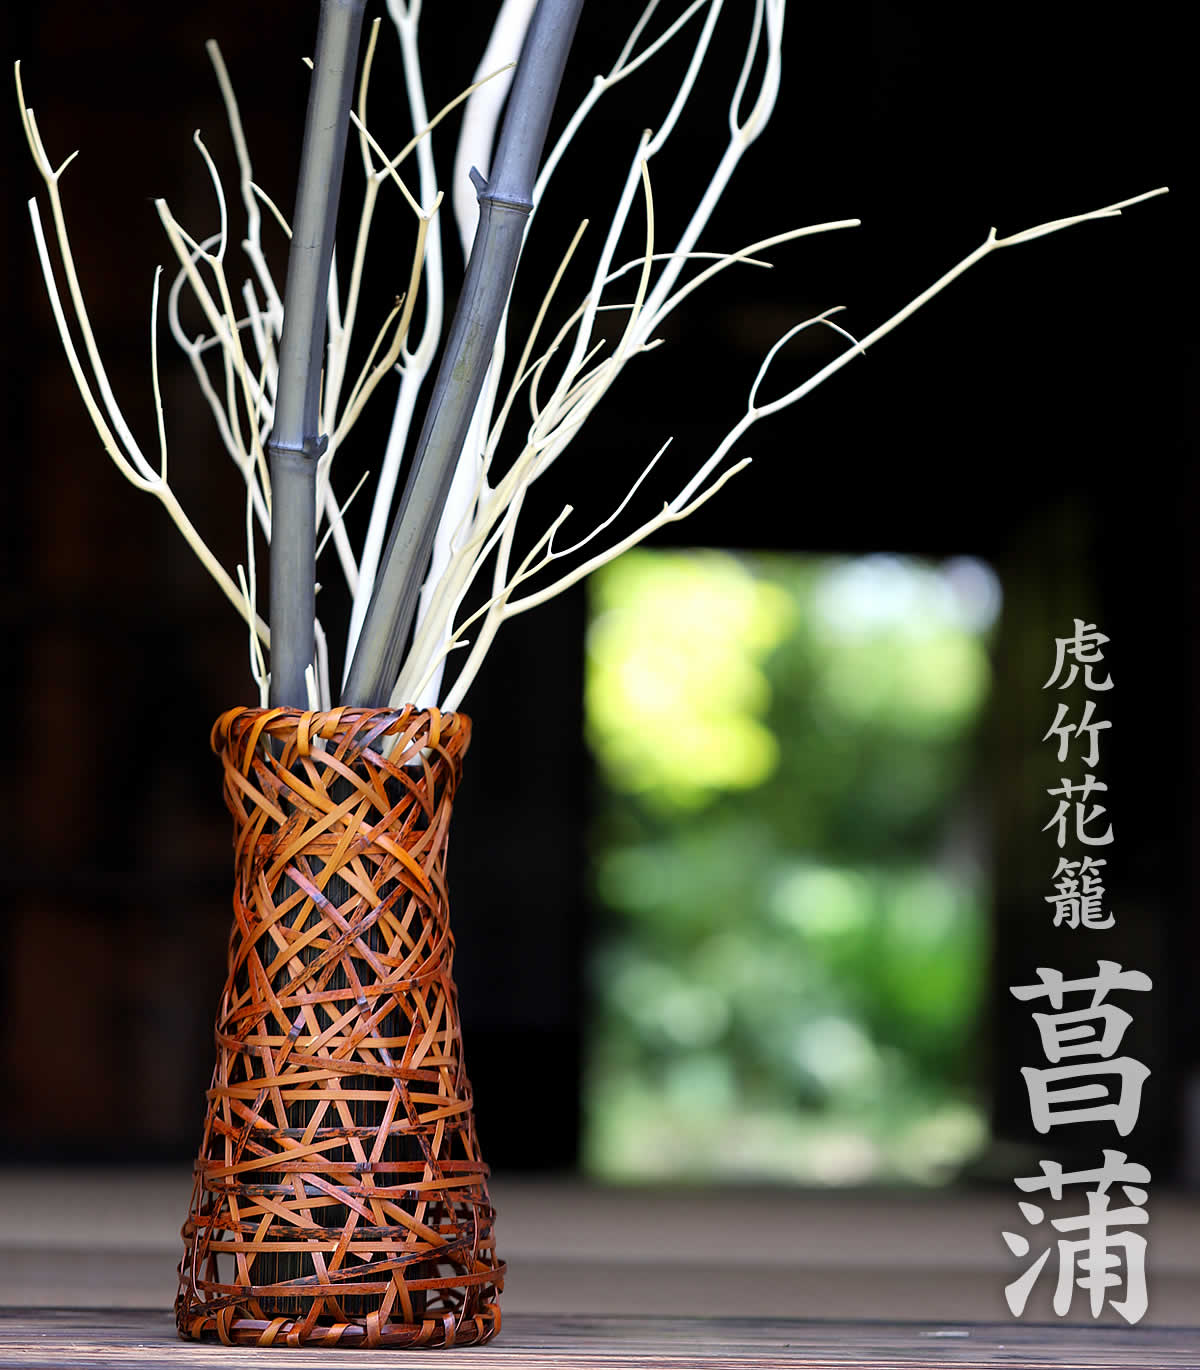 虎竹花籠 菖蒲は、日本唯一の虎斑竹を繊細に編み込んだ花かごです。